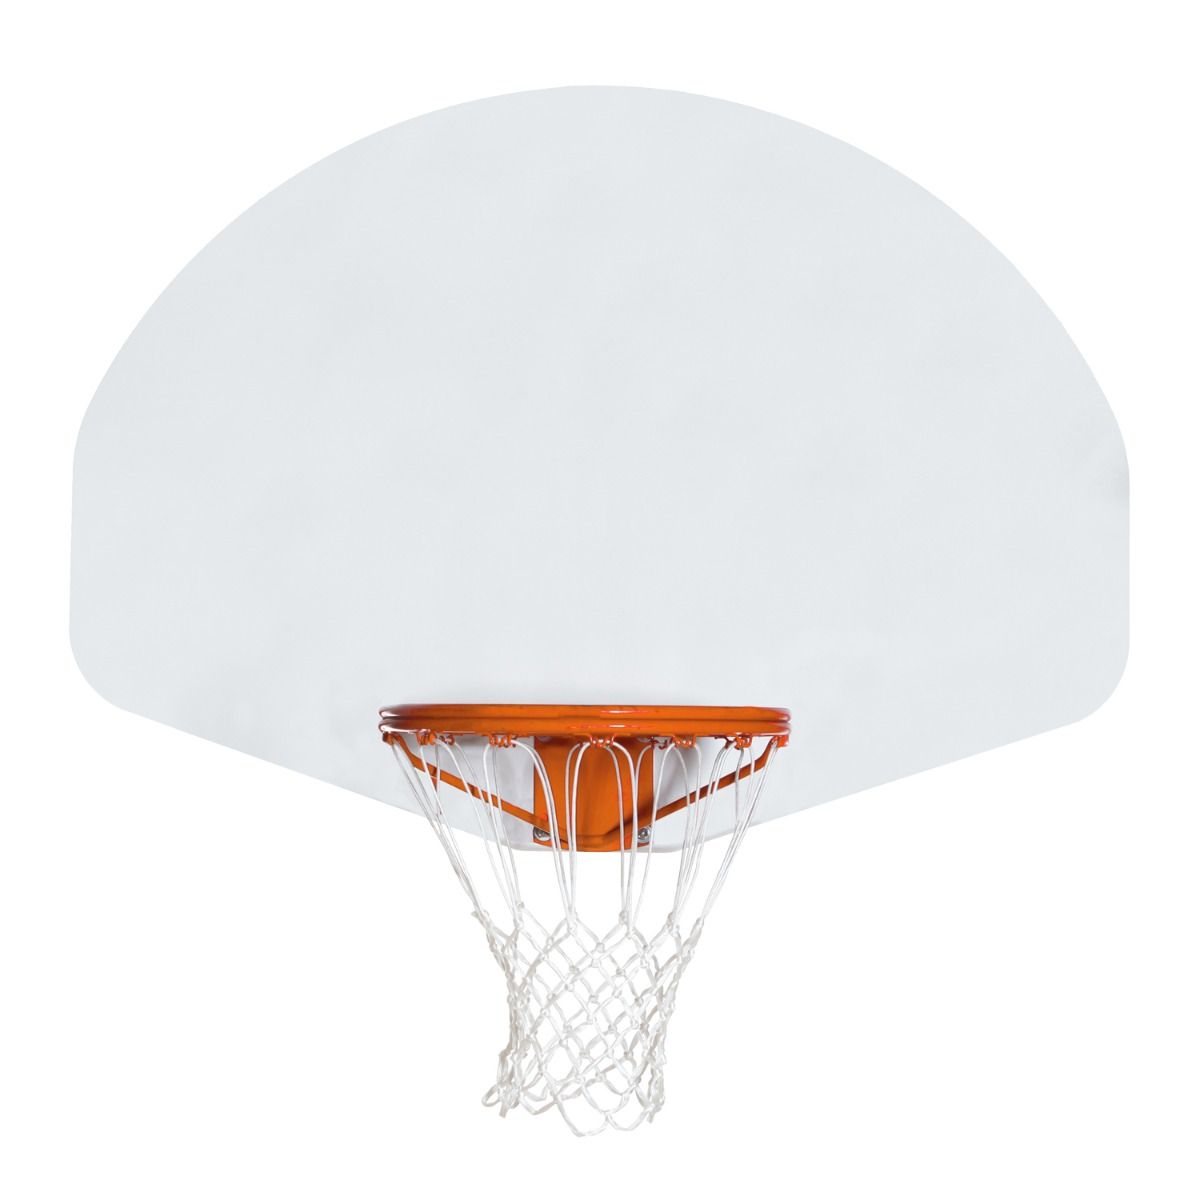 Cast Aluminum Fan-Shaped Basketball Outdoor Backboard